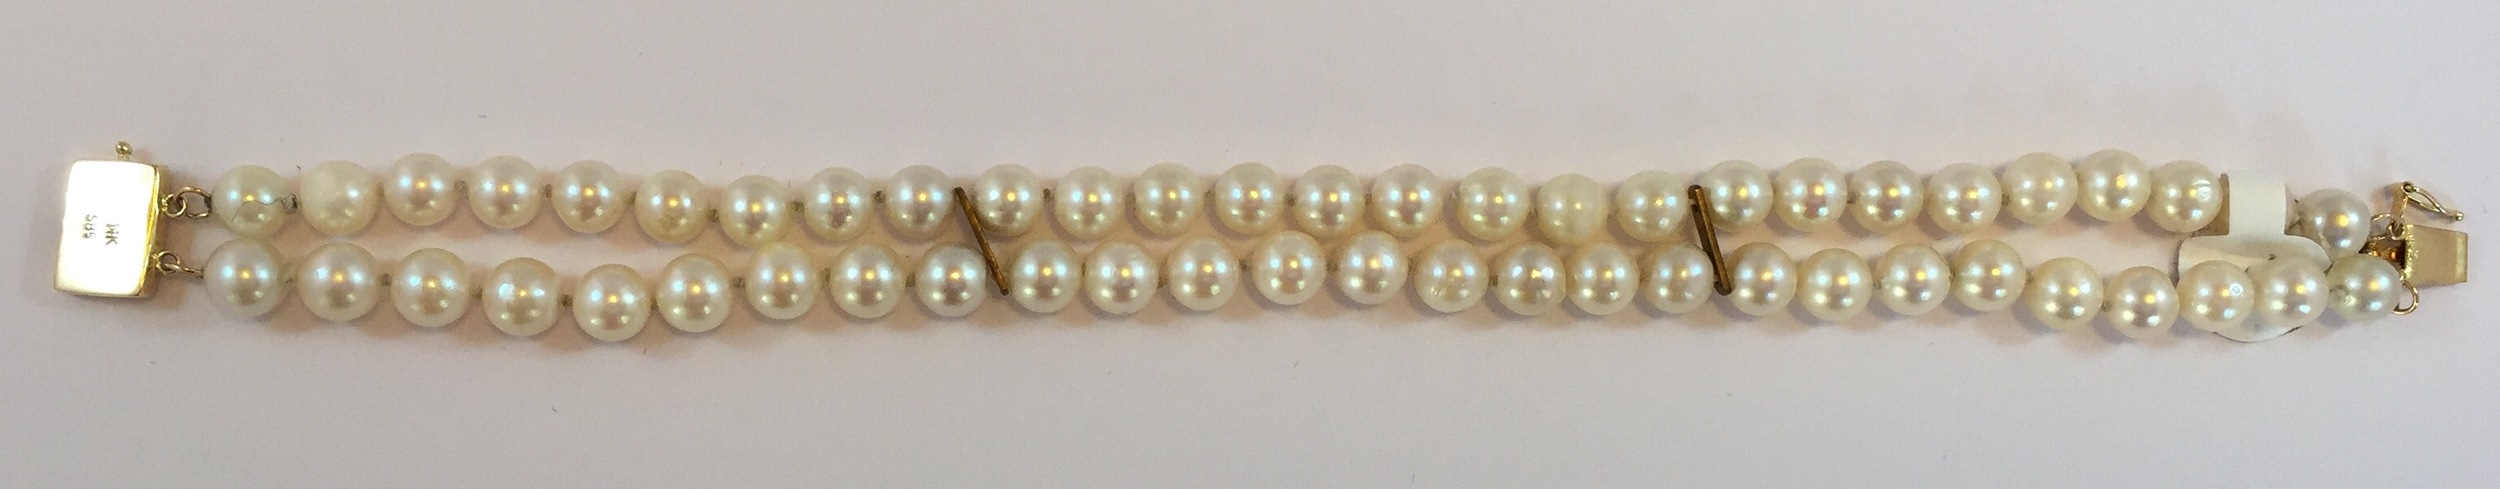 Pearls — Trillion Jewels